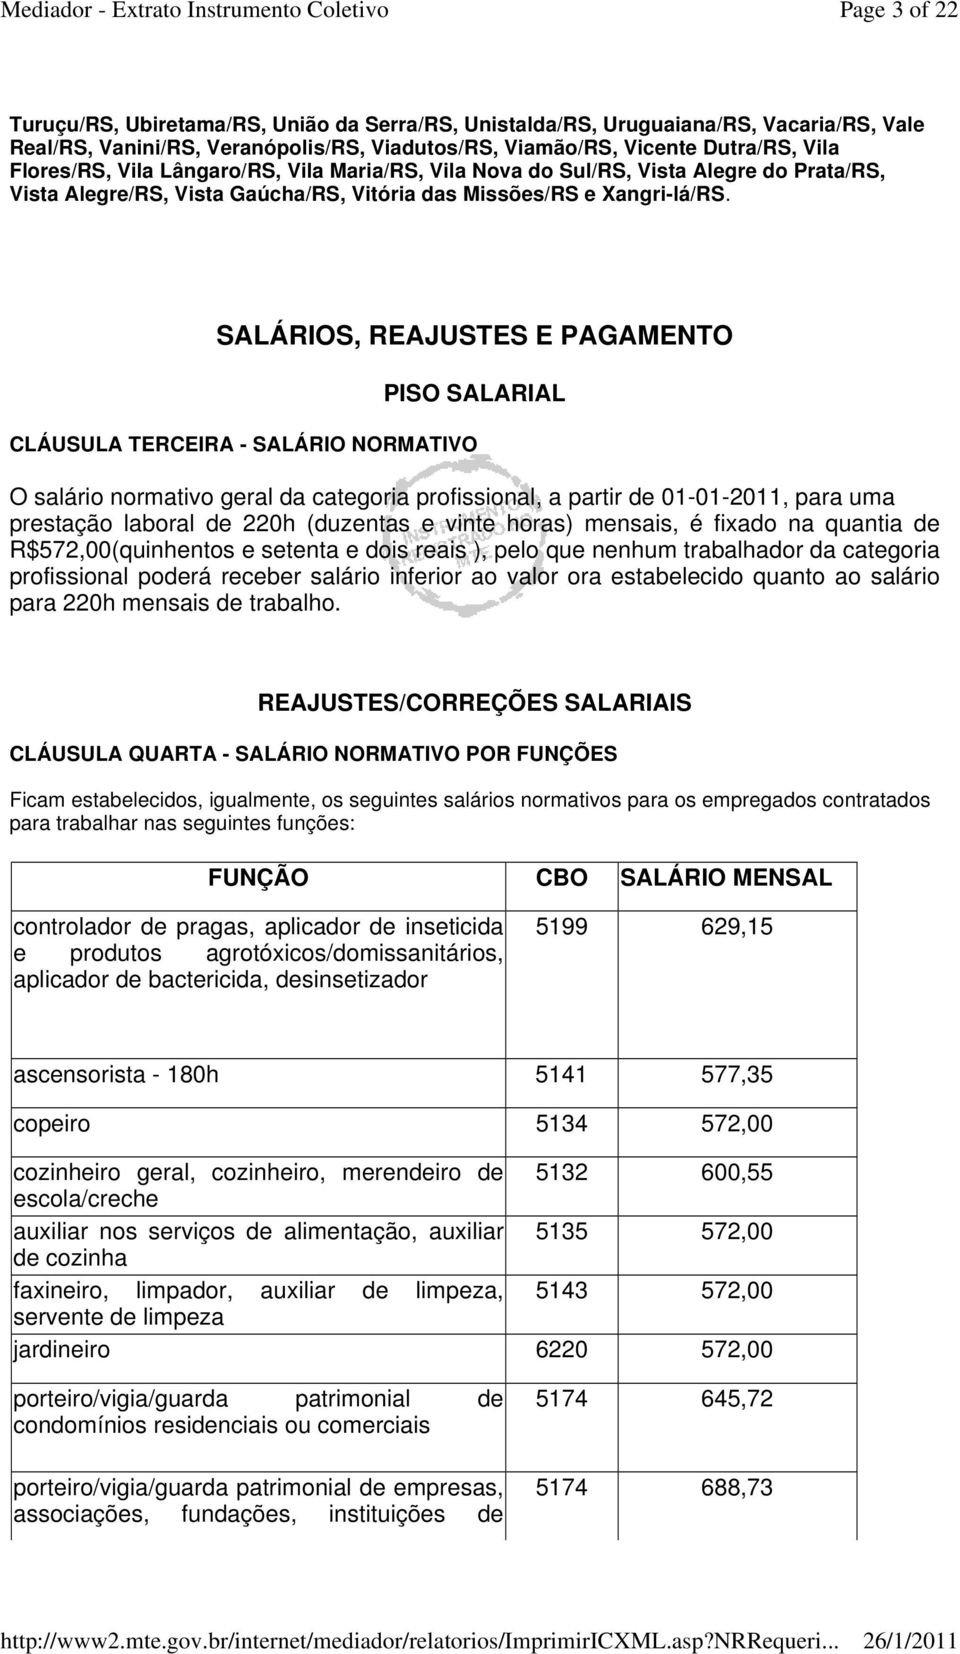 SALÁRIOS, REAJUSTES E PAGAMENTO PISO SALARIAL CLÁUSULA TERCEIRA - SALÁRIO NORMATIVO O salário normativo geral da categoria profissional, a partir de 01-01-2011, para uma prestação laboral de 220h